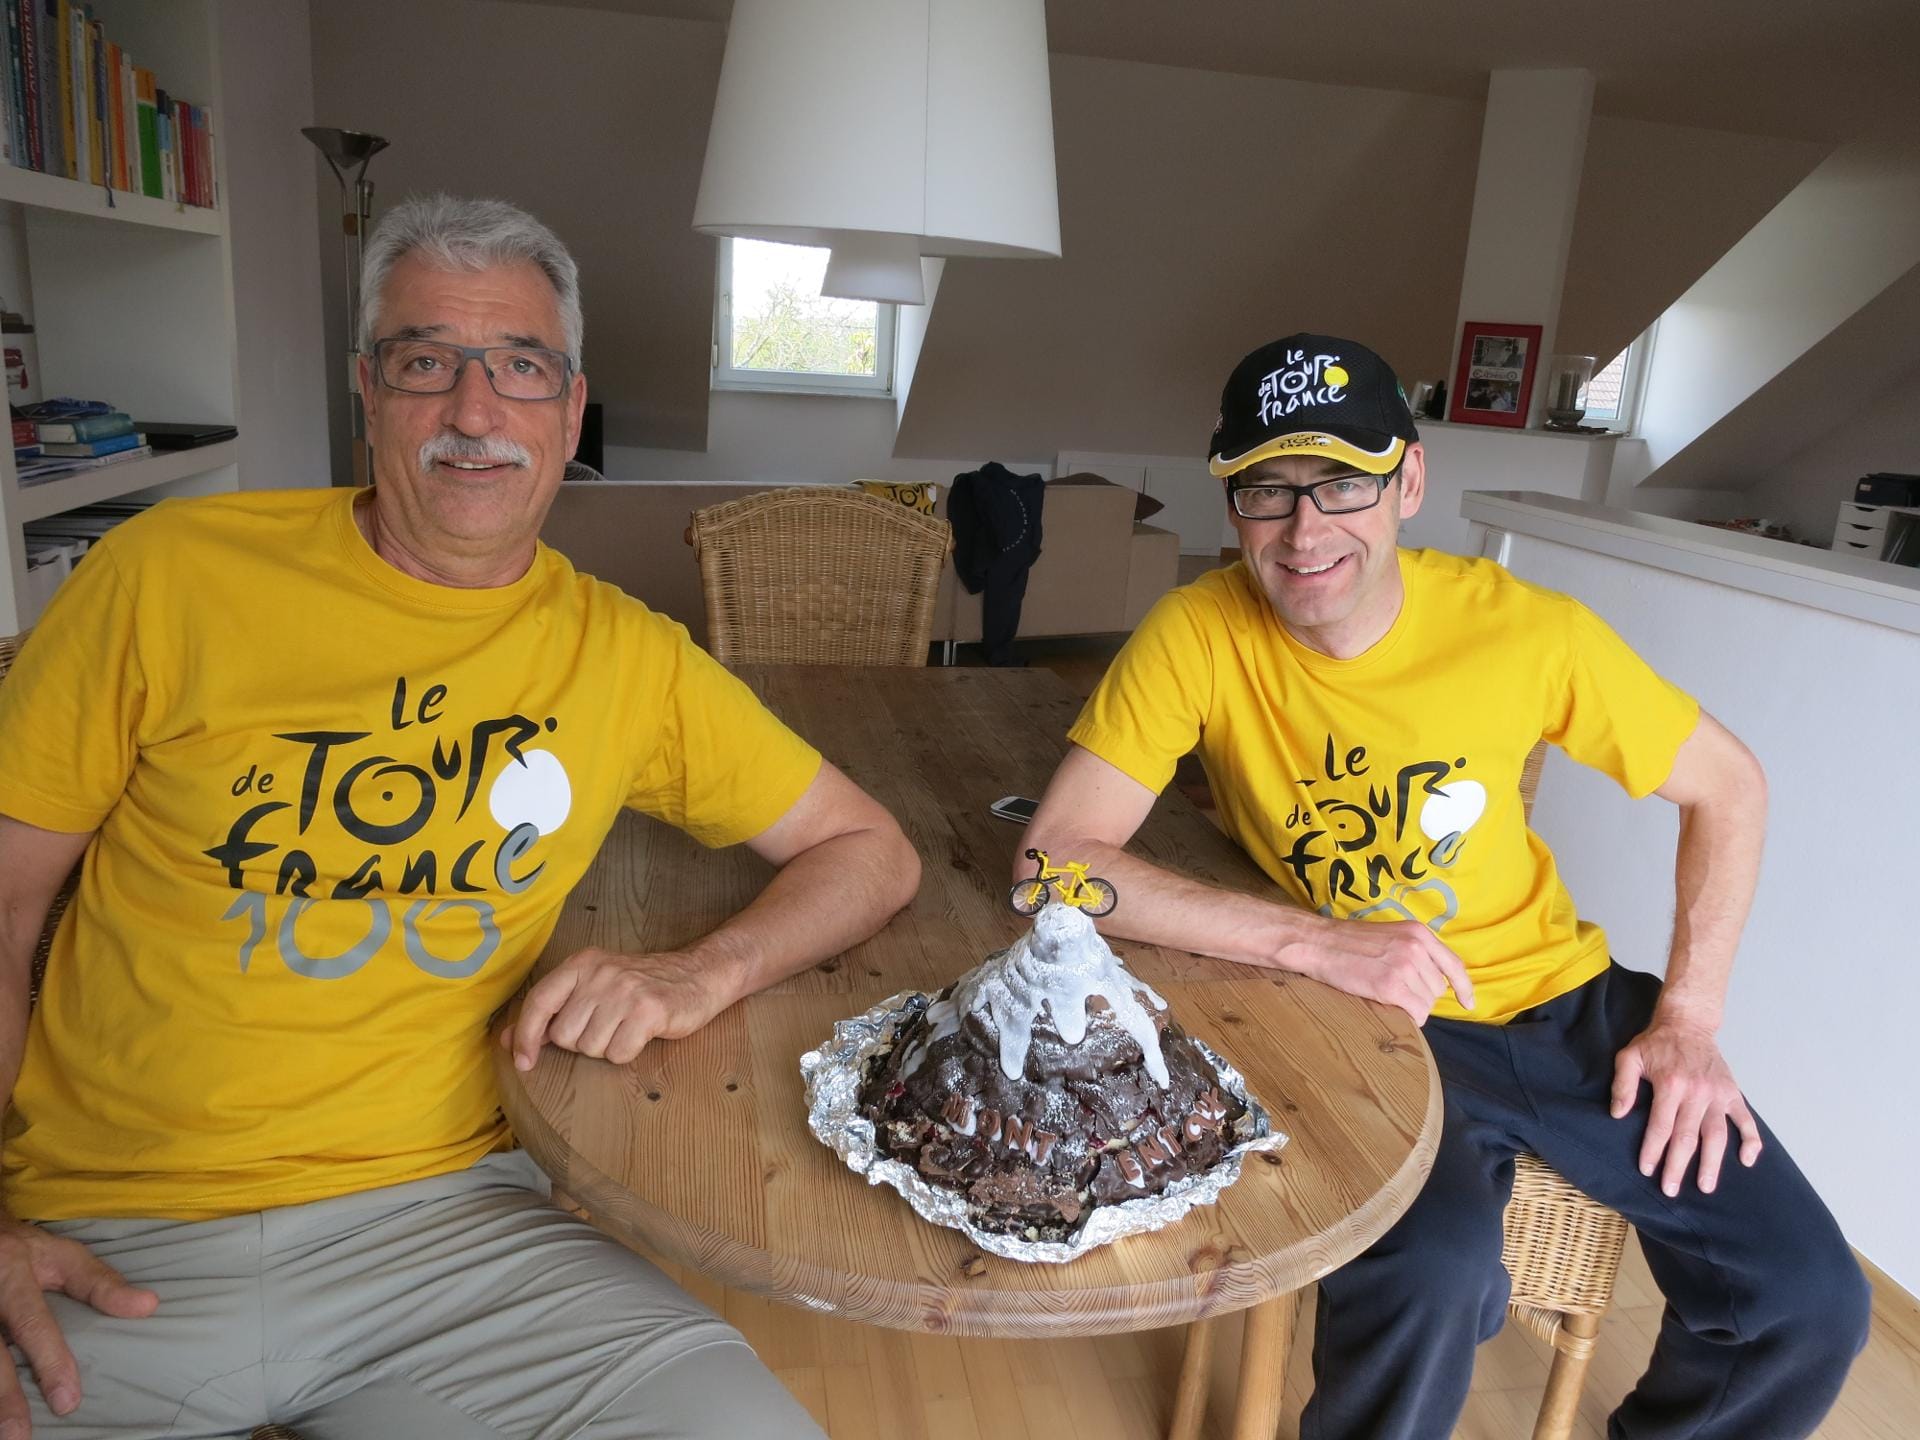 Voll focusiert auf die Tour de France und den Mont Ventoux: Biermann (re.) mit seinem Freund und Radkollegen Karl-Heinz "Charly" Schirber.